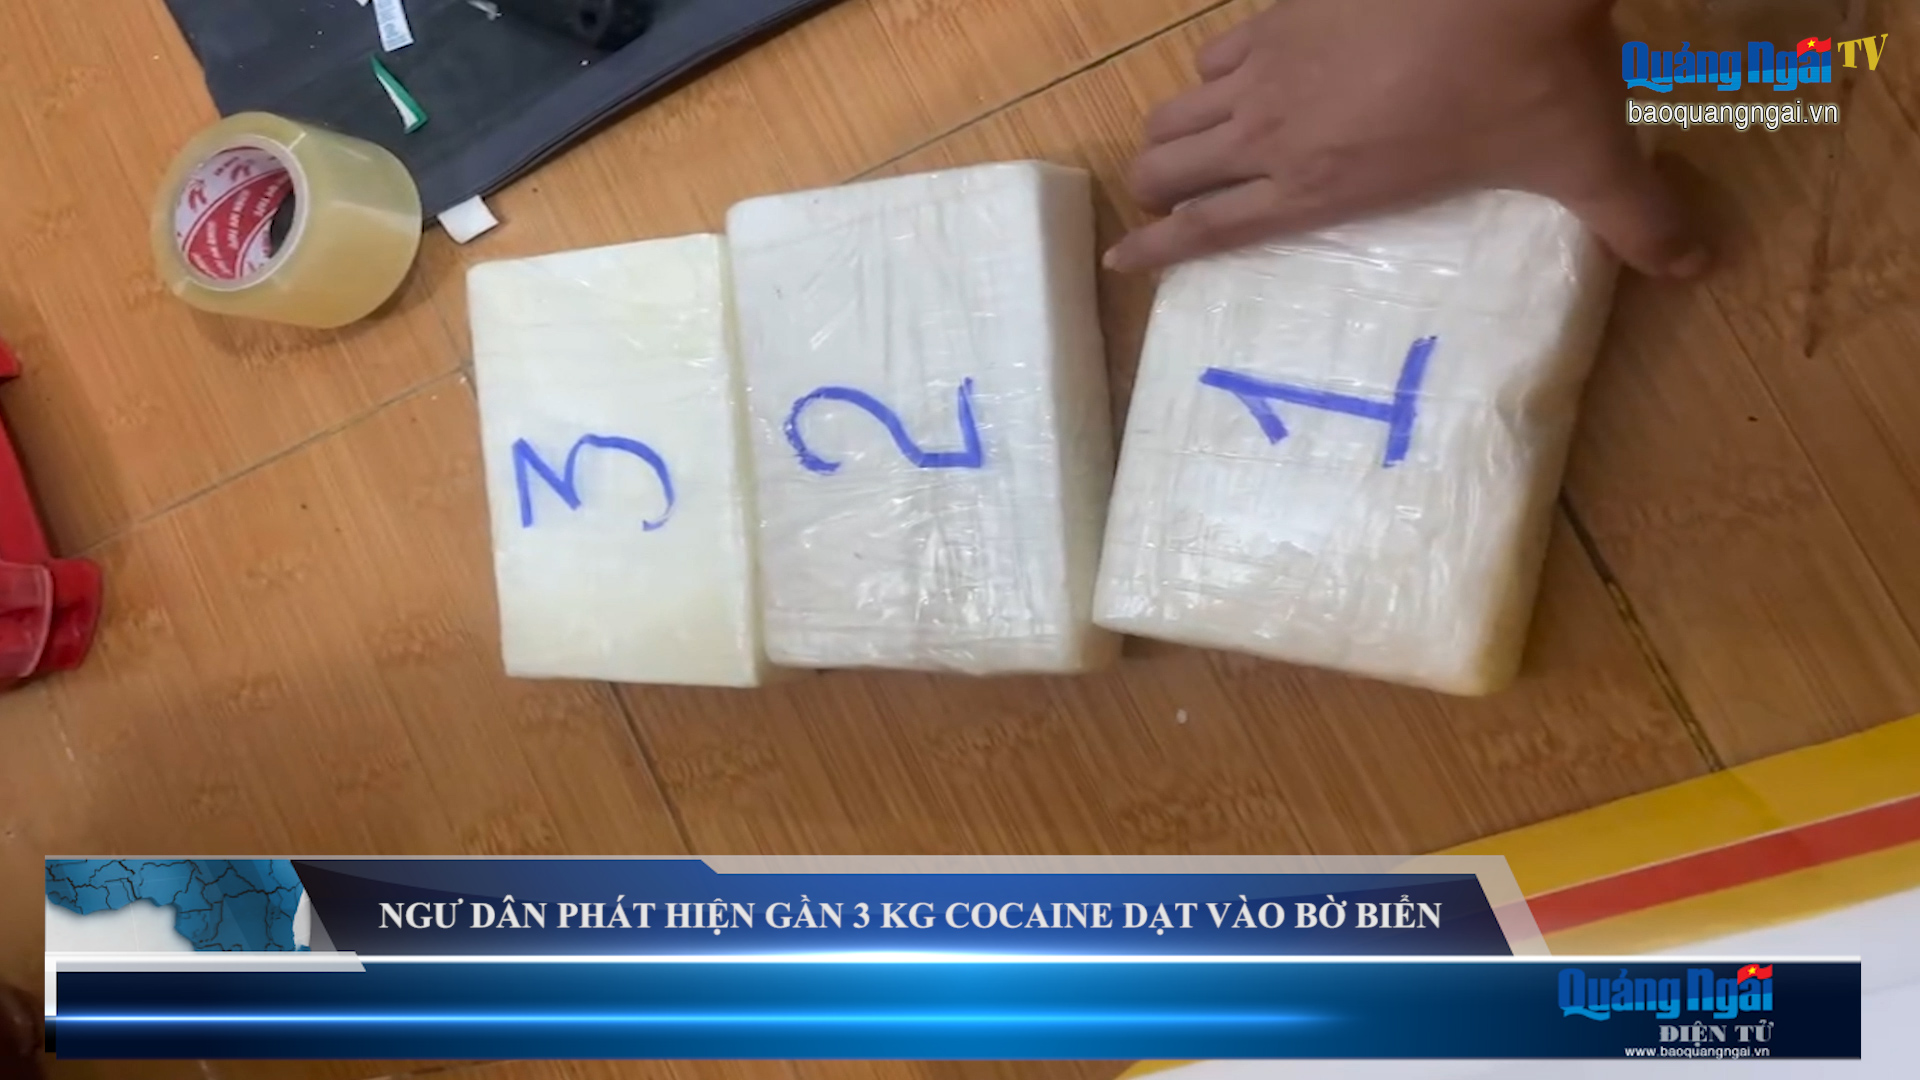 Video: Ngư dân phát hiện gần 3 kg ma túy dạt vào bờ biển